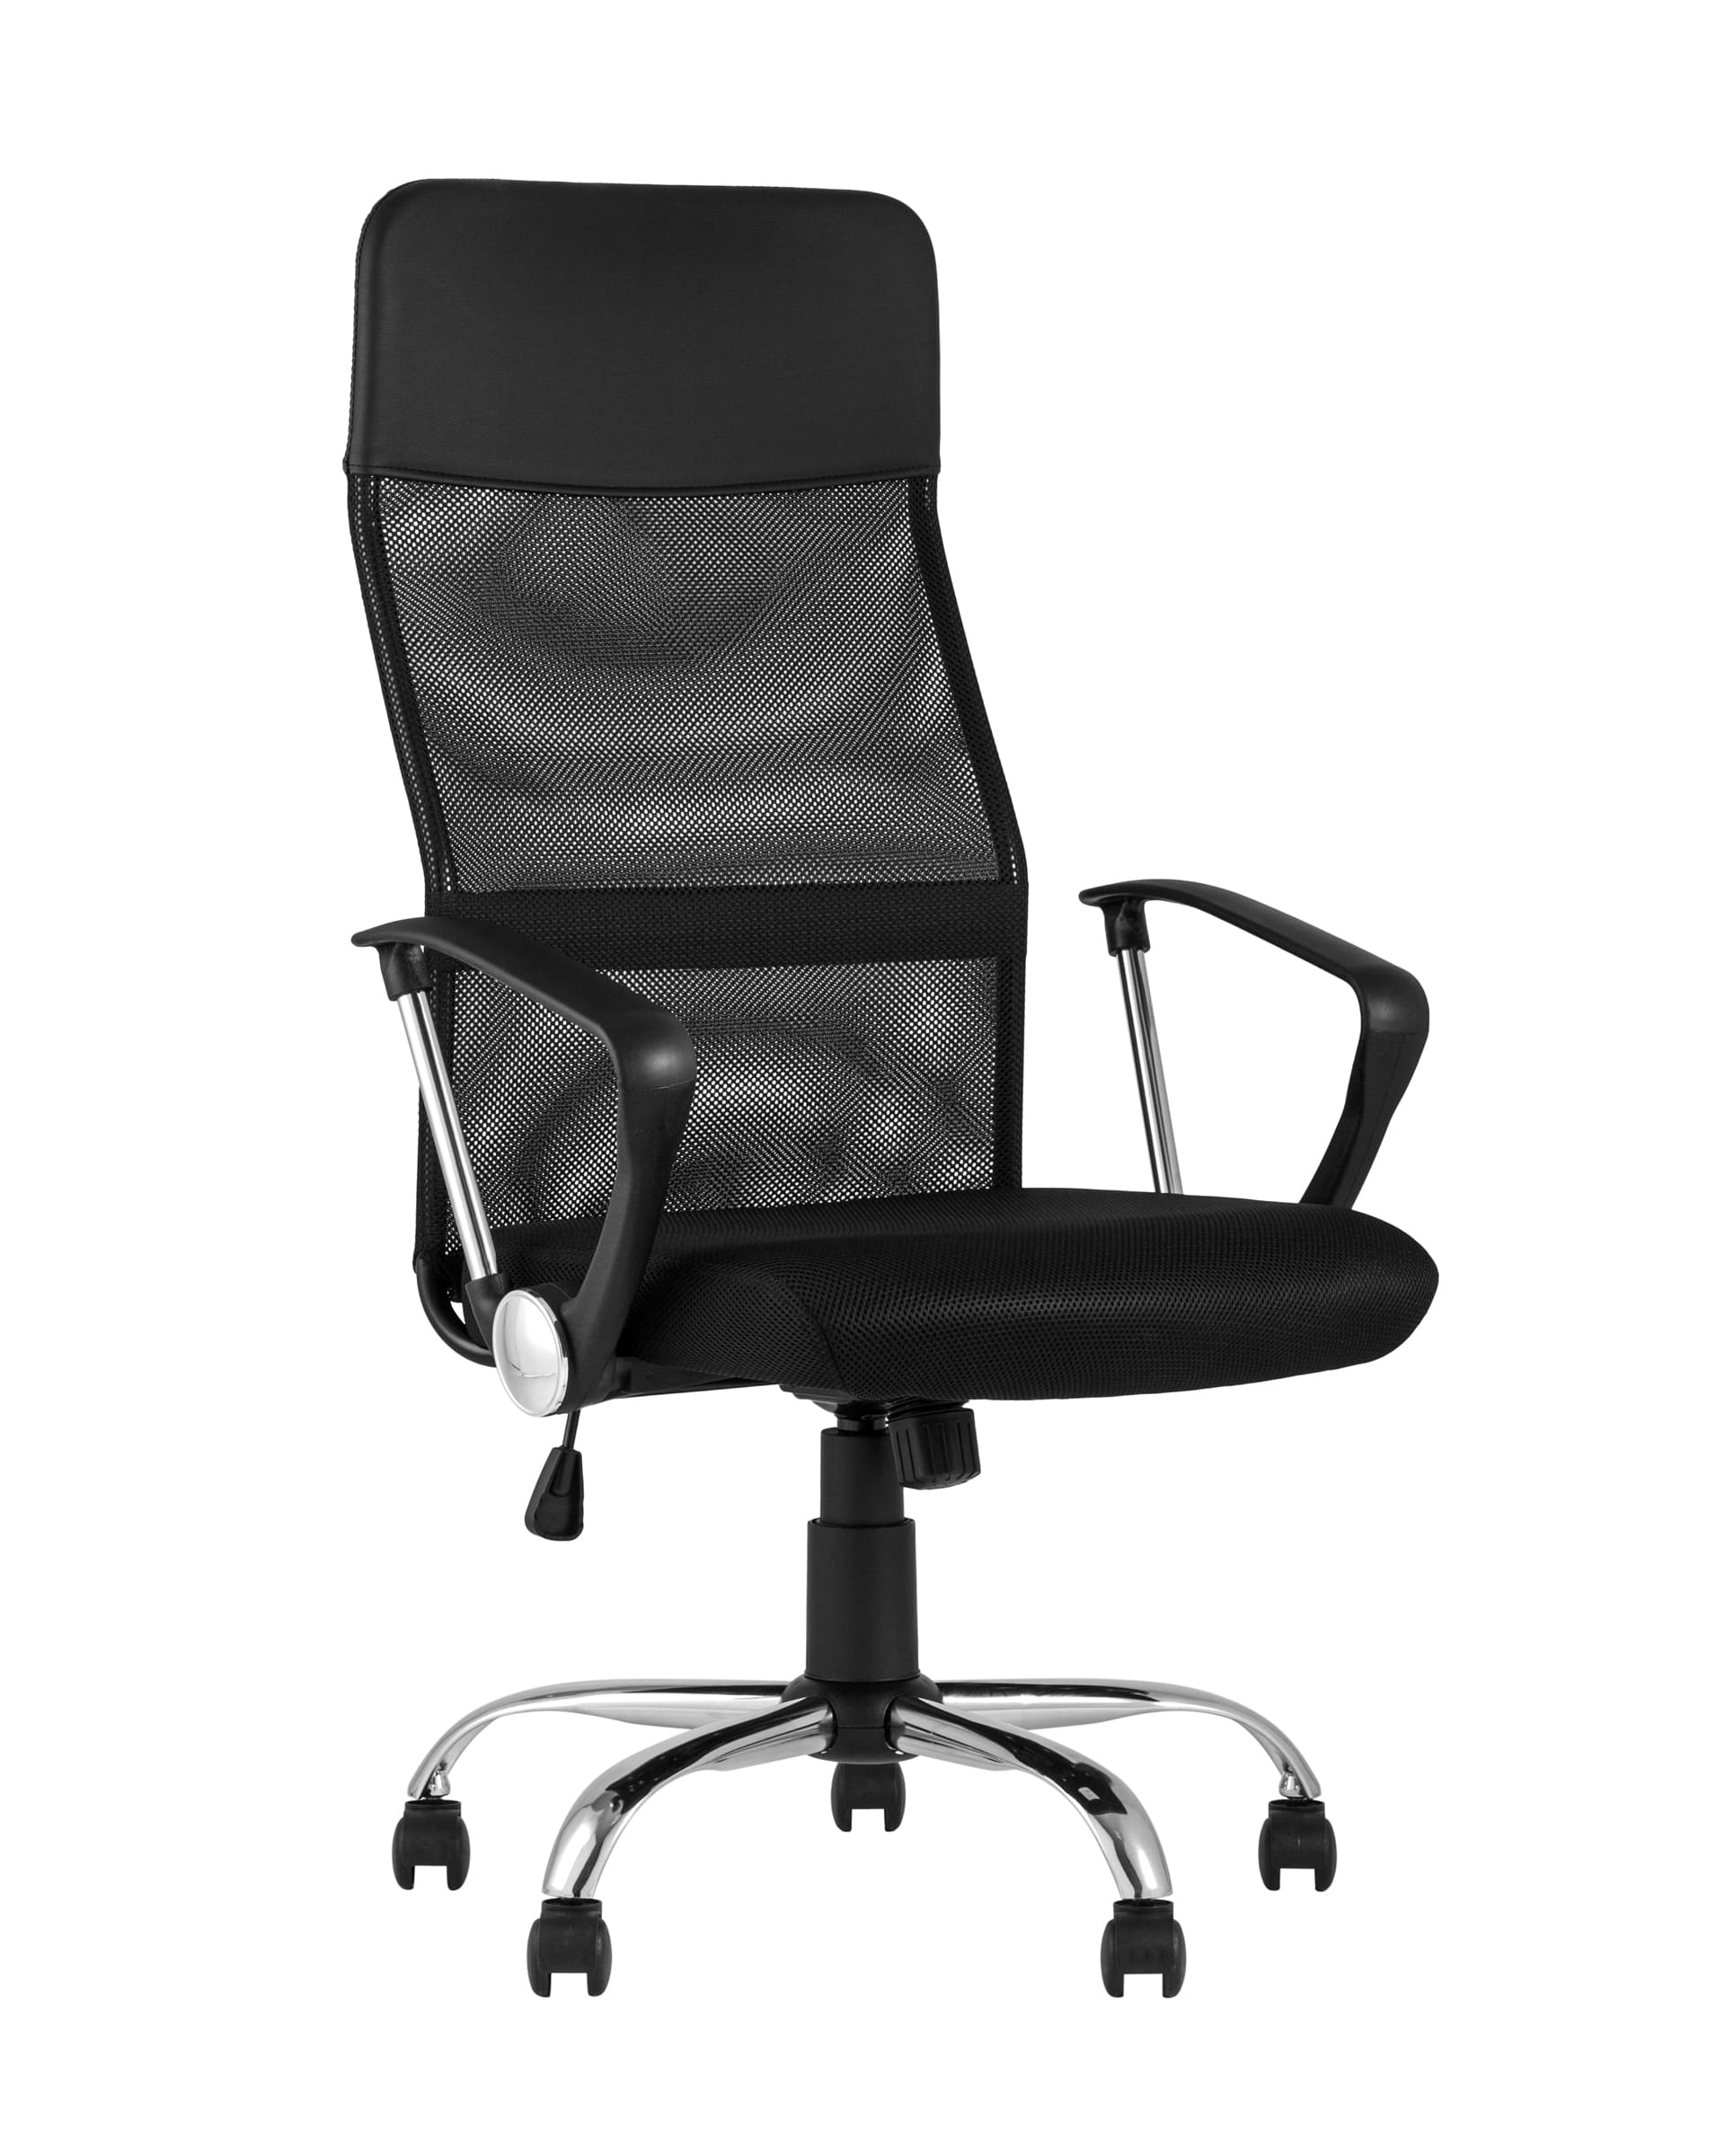 Компьютерное кресло TopChairs Benefit офисное черное, обивка из сочетания экокожи, сетки и текстиля, механизм качани